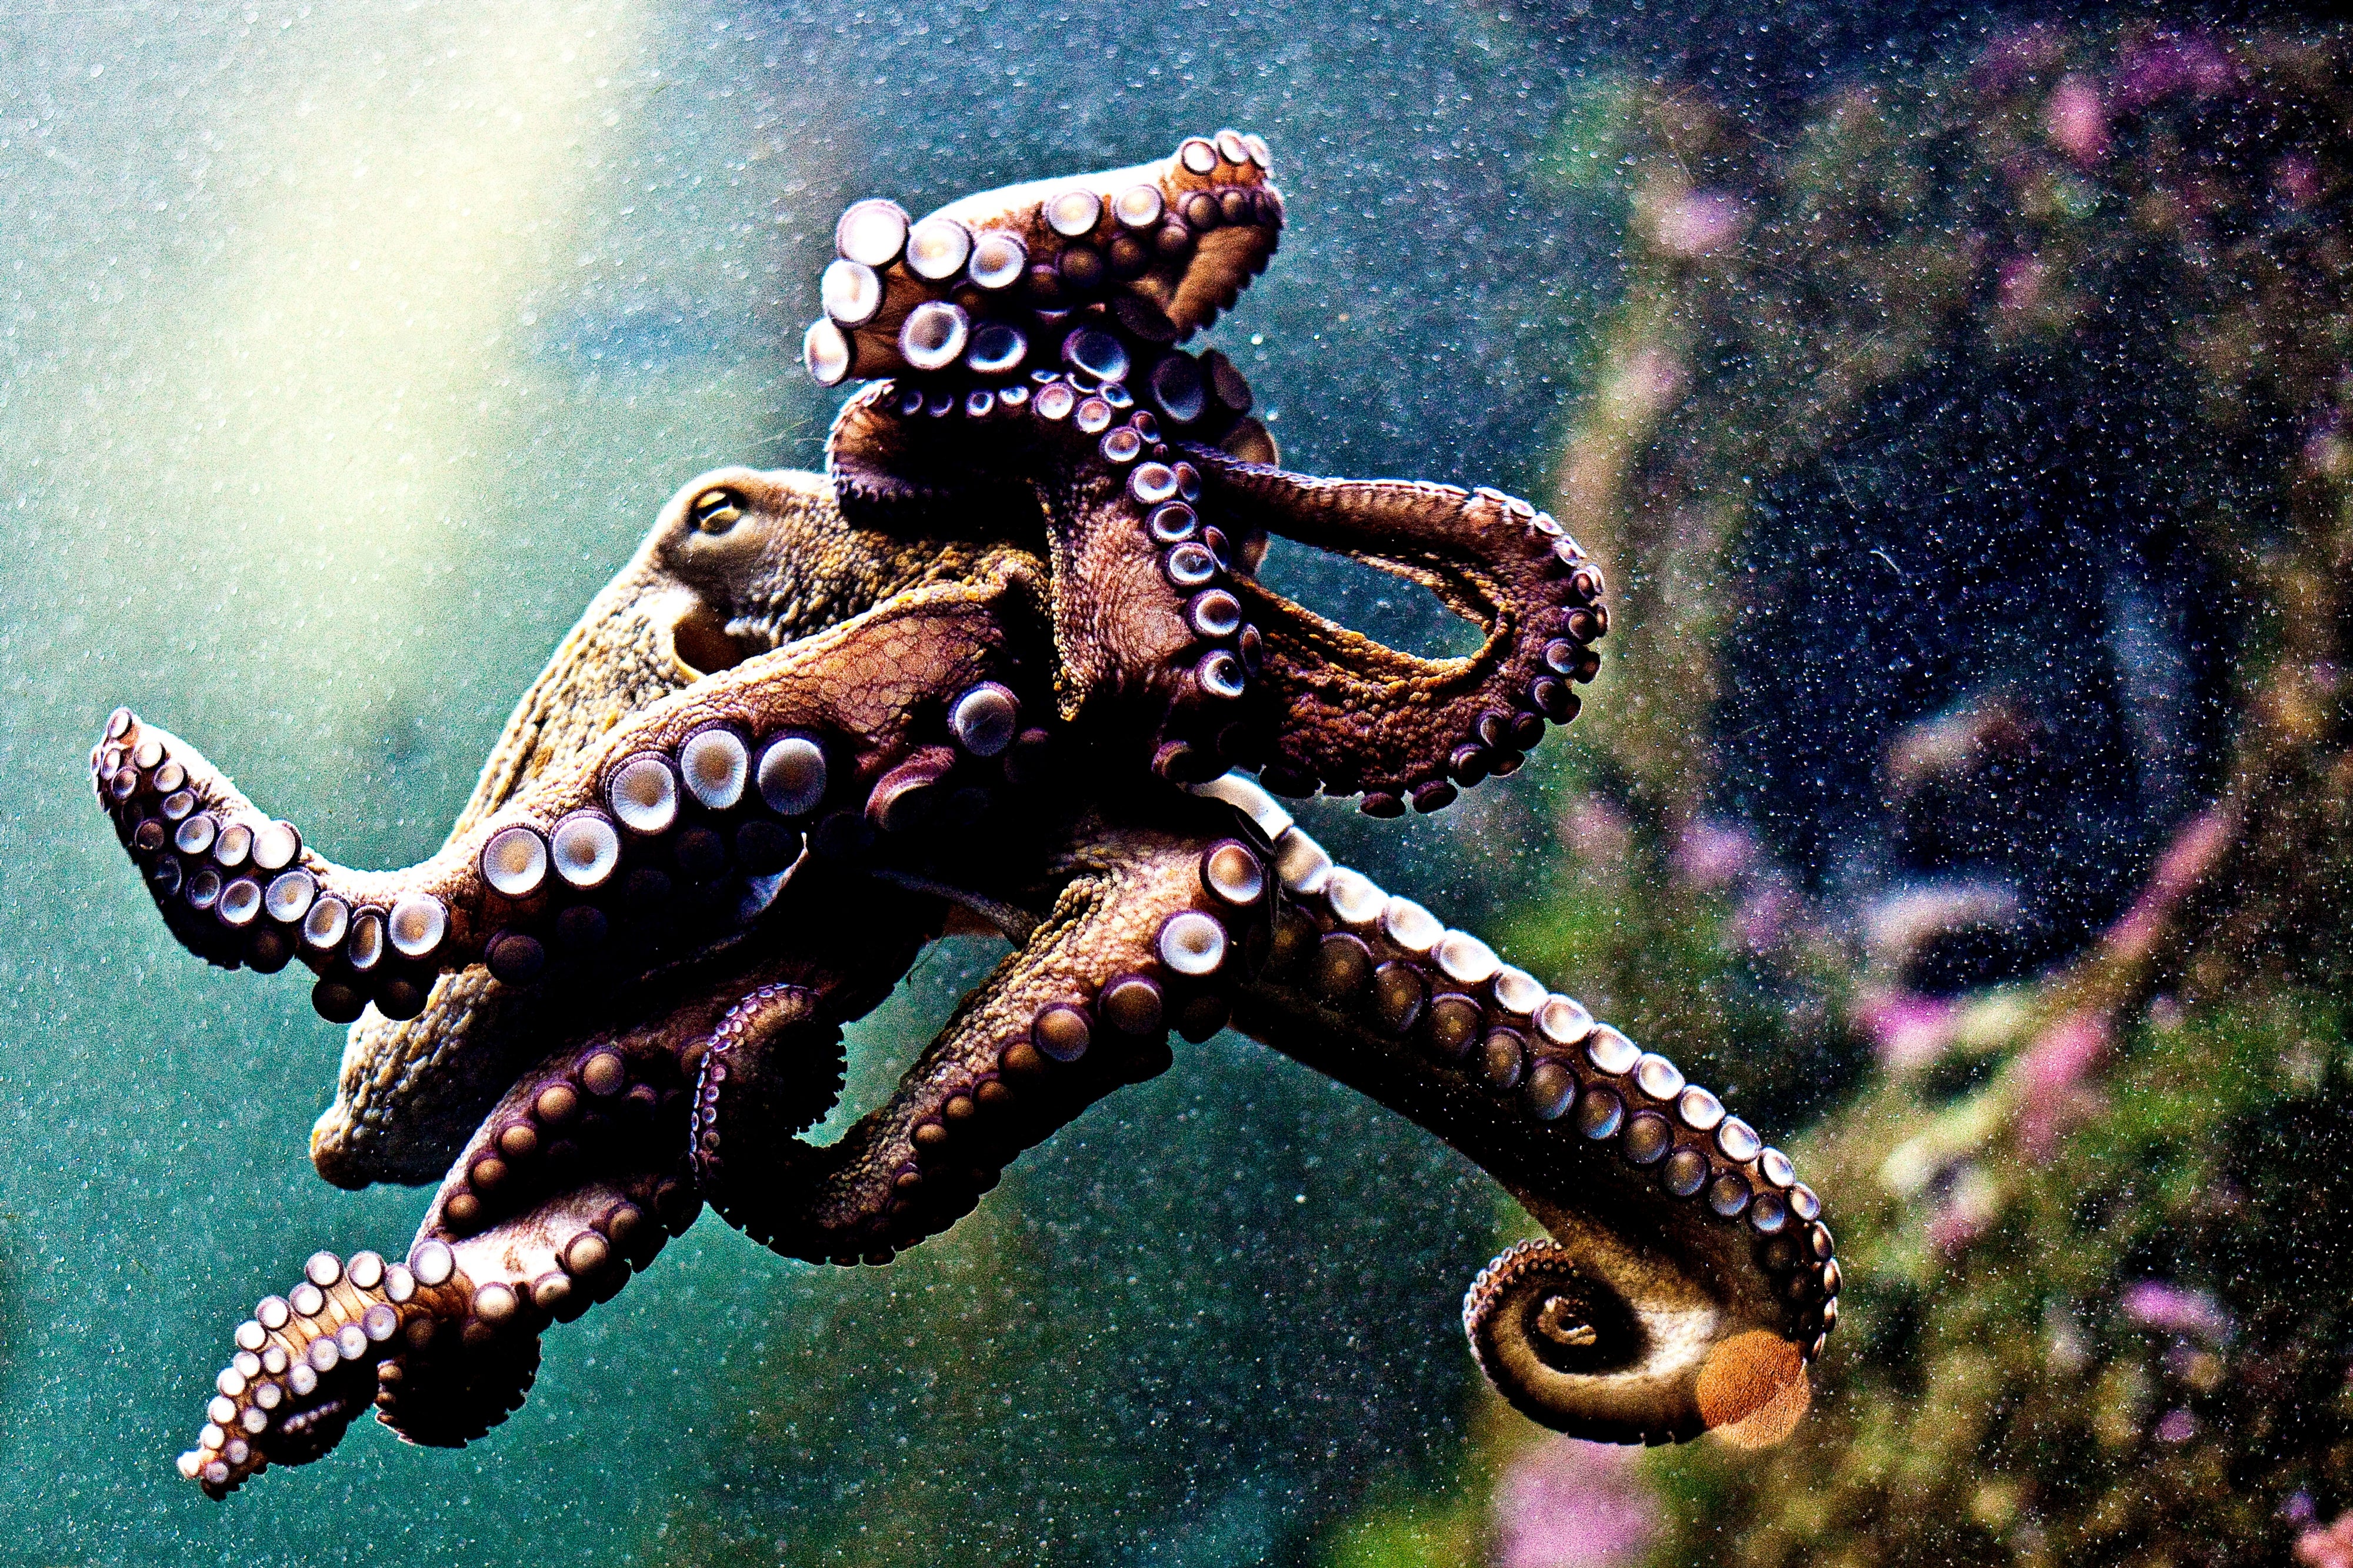 Octopus Species Chart